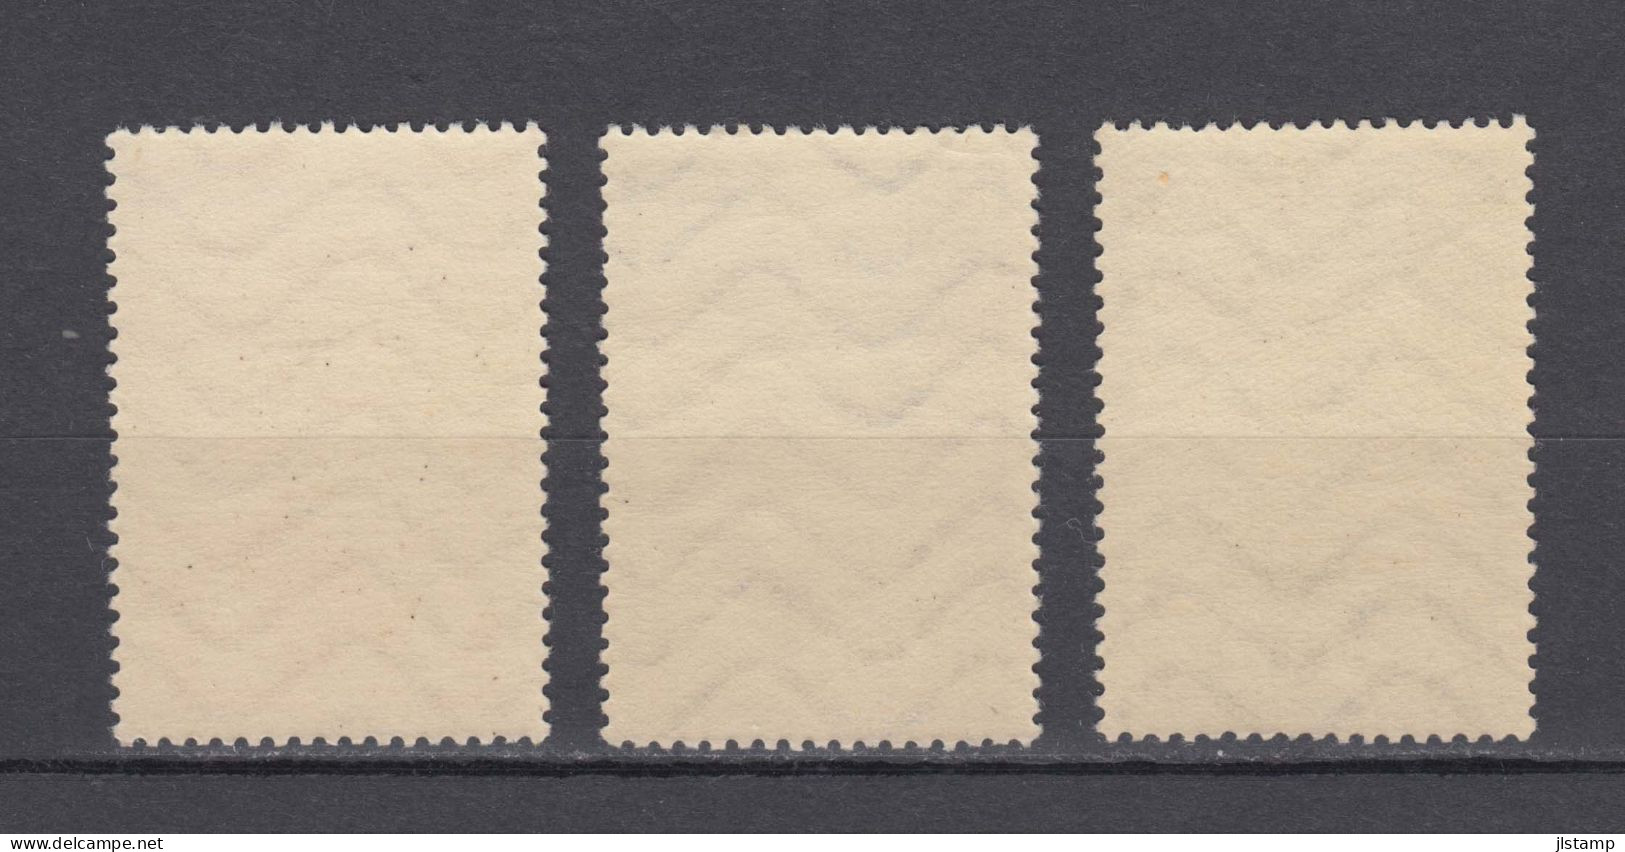 Japan 1937 Plane Surtax Stamps Set,Scott#B1-B3,OG,MNH,VF - Unused Stamps